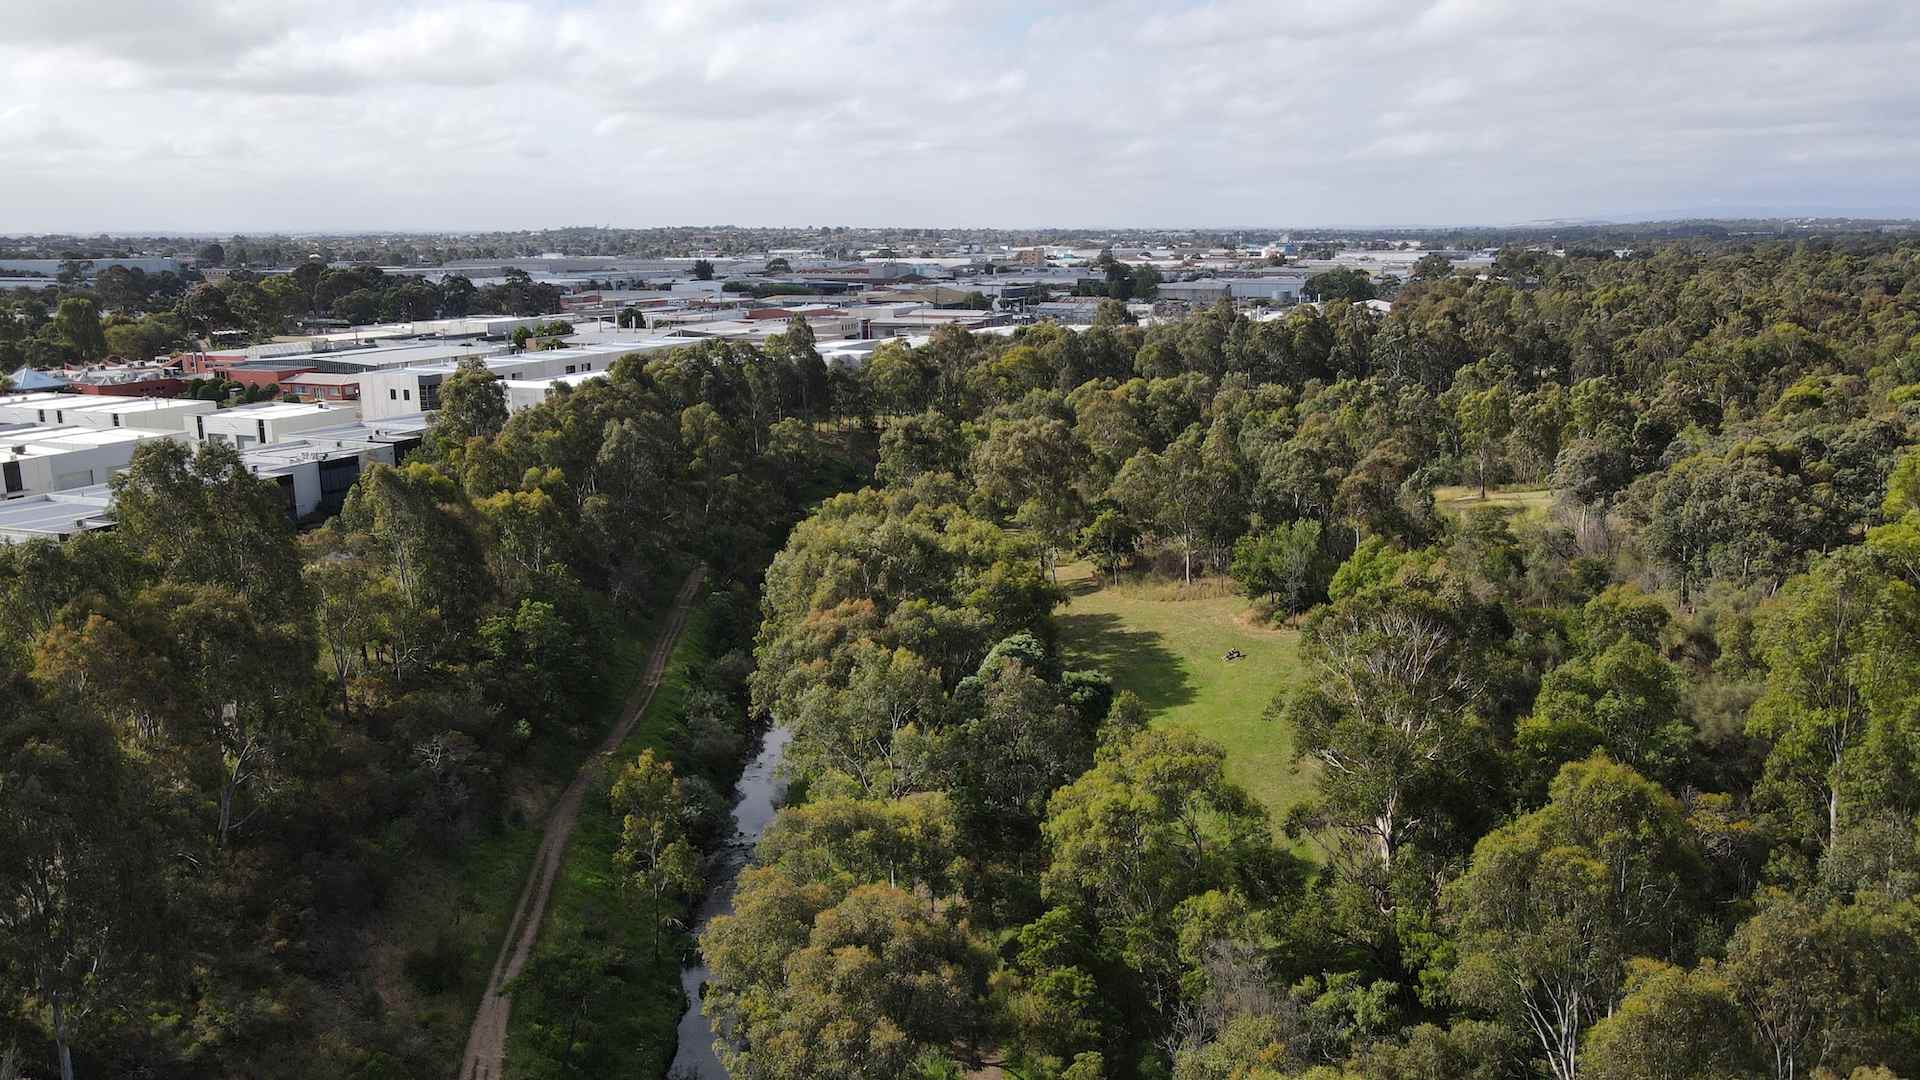 DAREBIN PARKLANDS - one of the best walks in Melbourne.